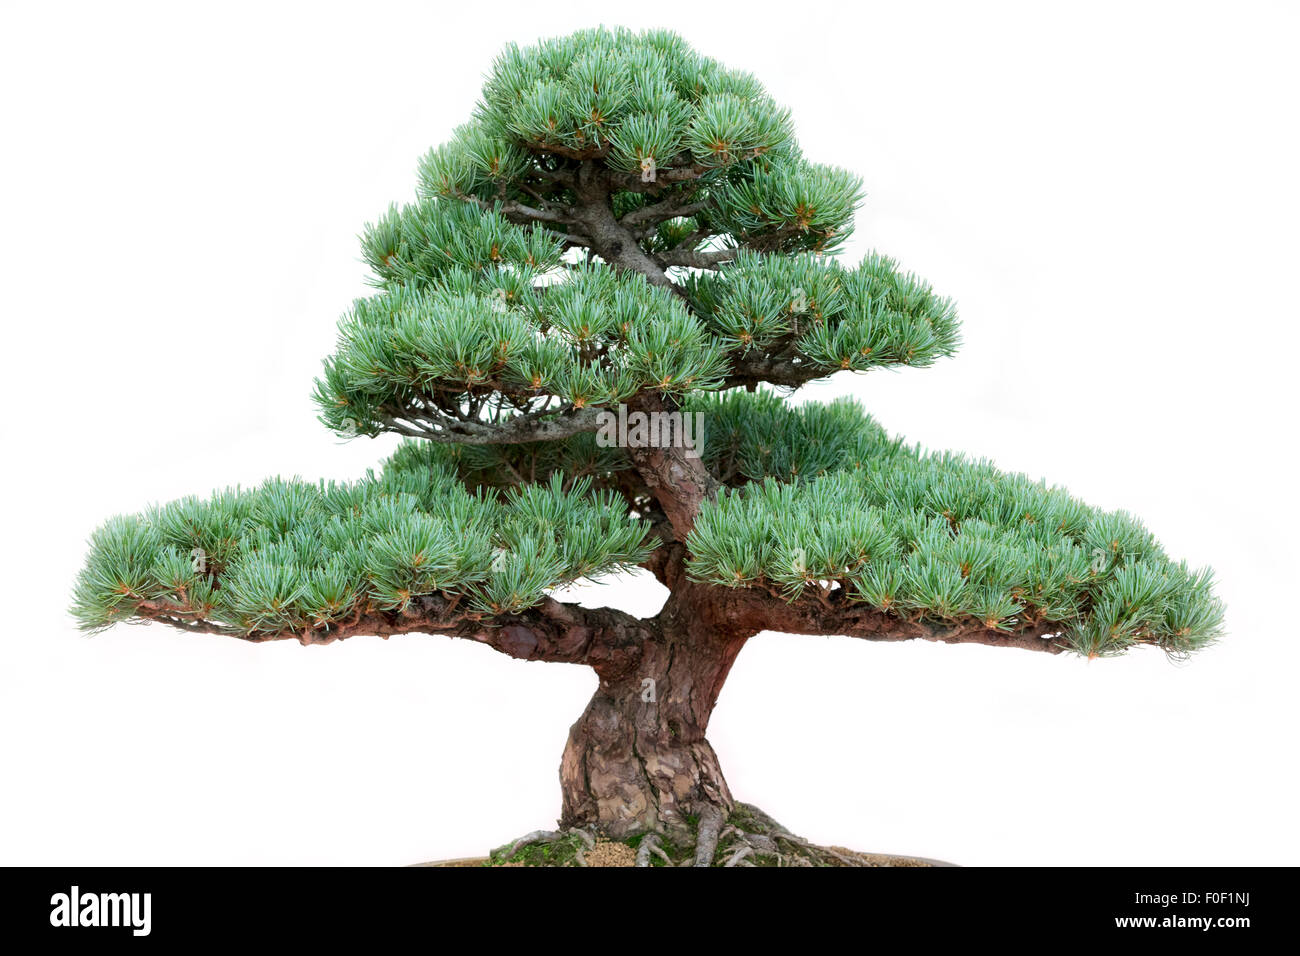 Bonsai pine tree on a white background Stock Photo